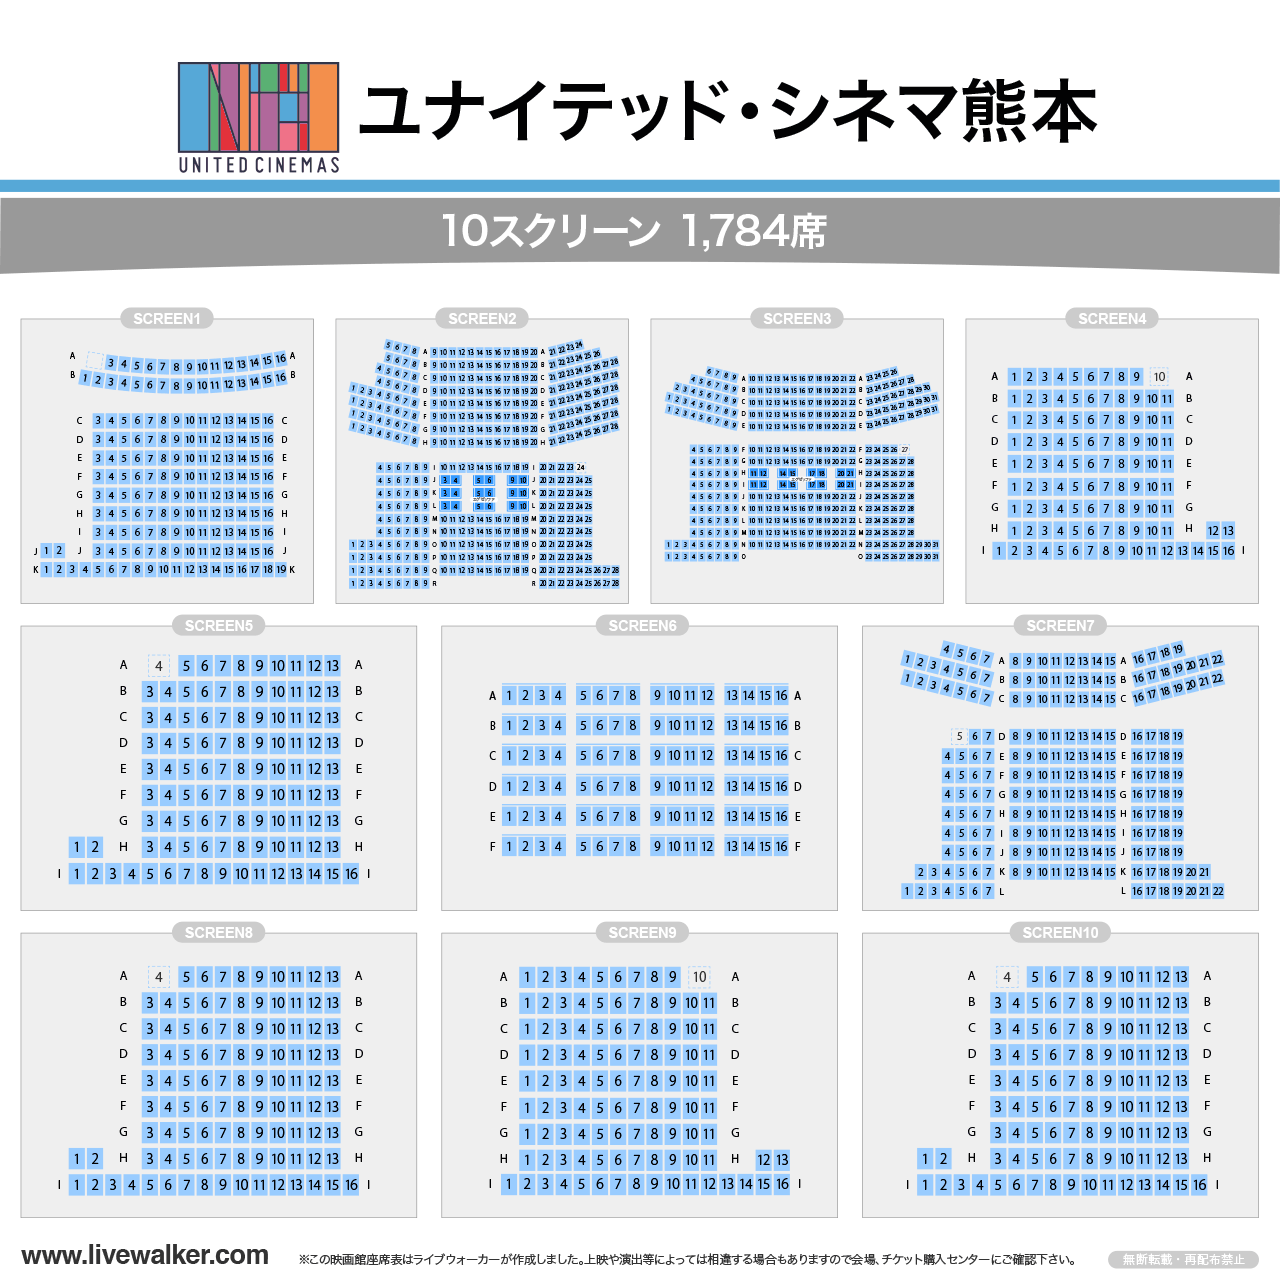 ユナイテッド・シネマ熊本スクリーンの座席表